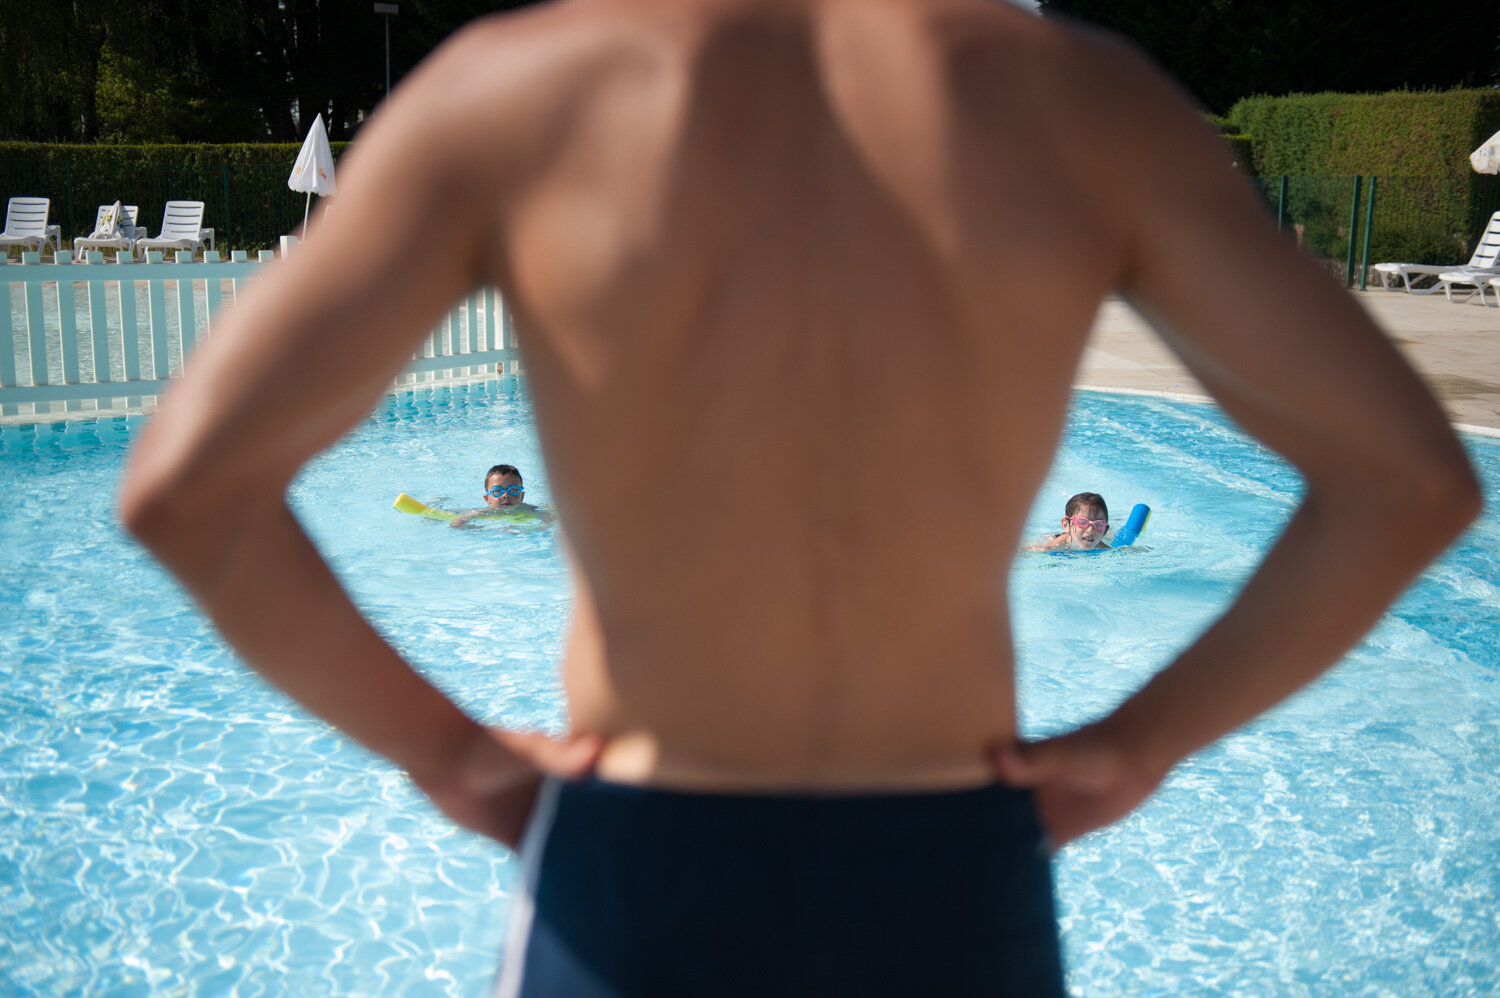  Cours de natation pour les enfants en vacances. Avec la CCAS. Pleaux, France. Juillet 2015 // Swimming lessons for children on vacation. With the CCAS. Pleaux, France. July 2015. 